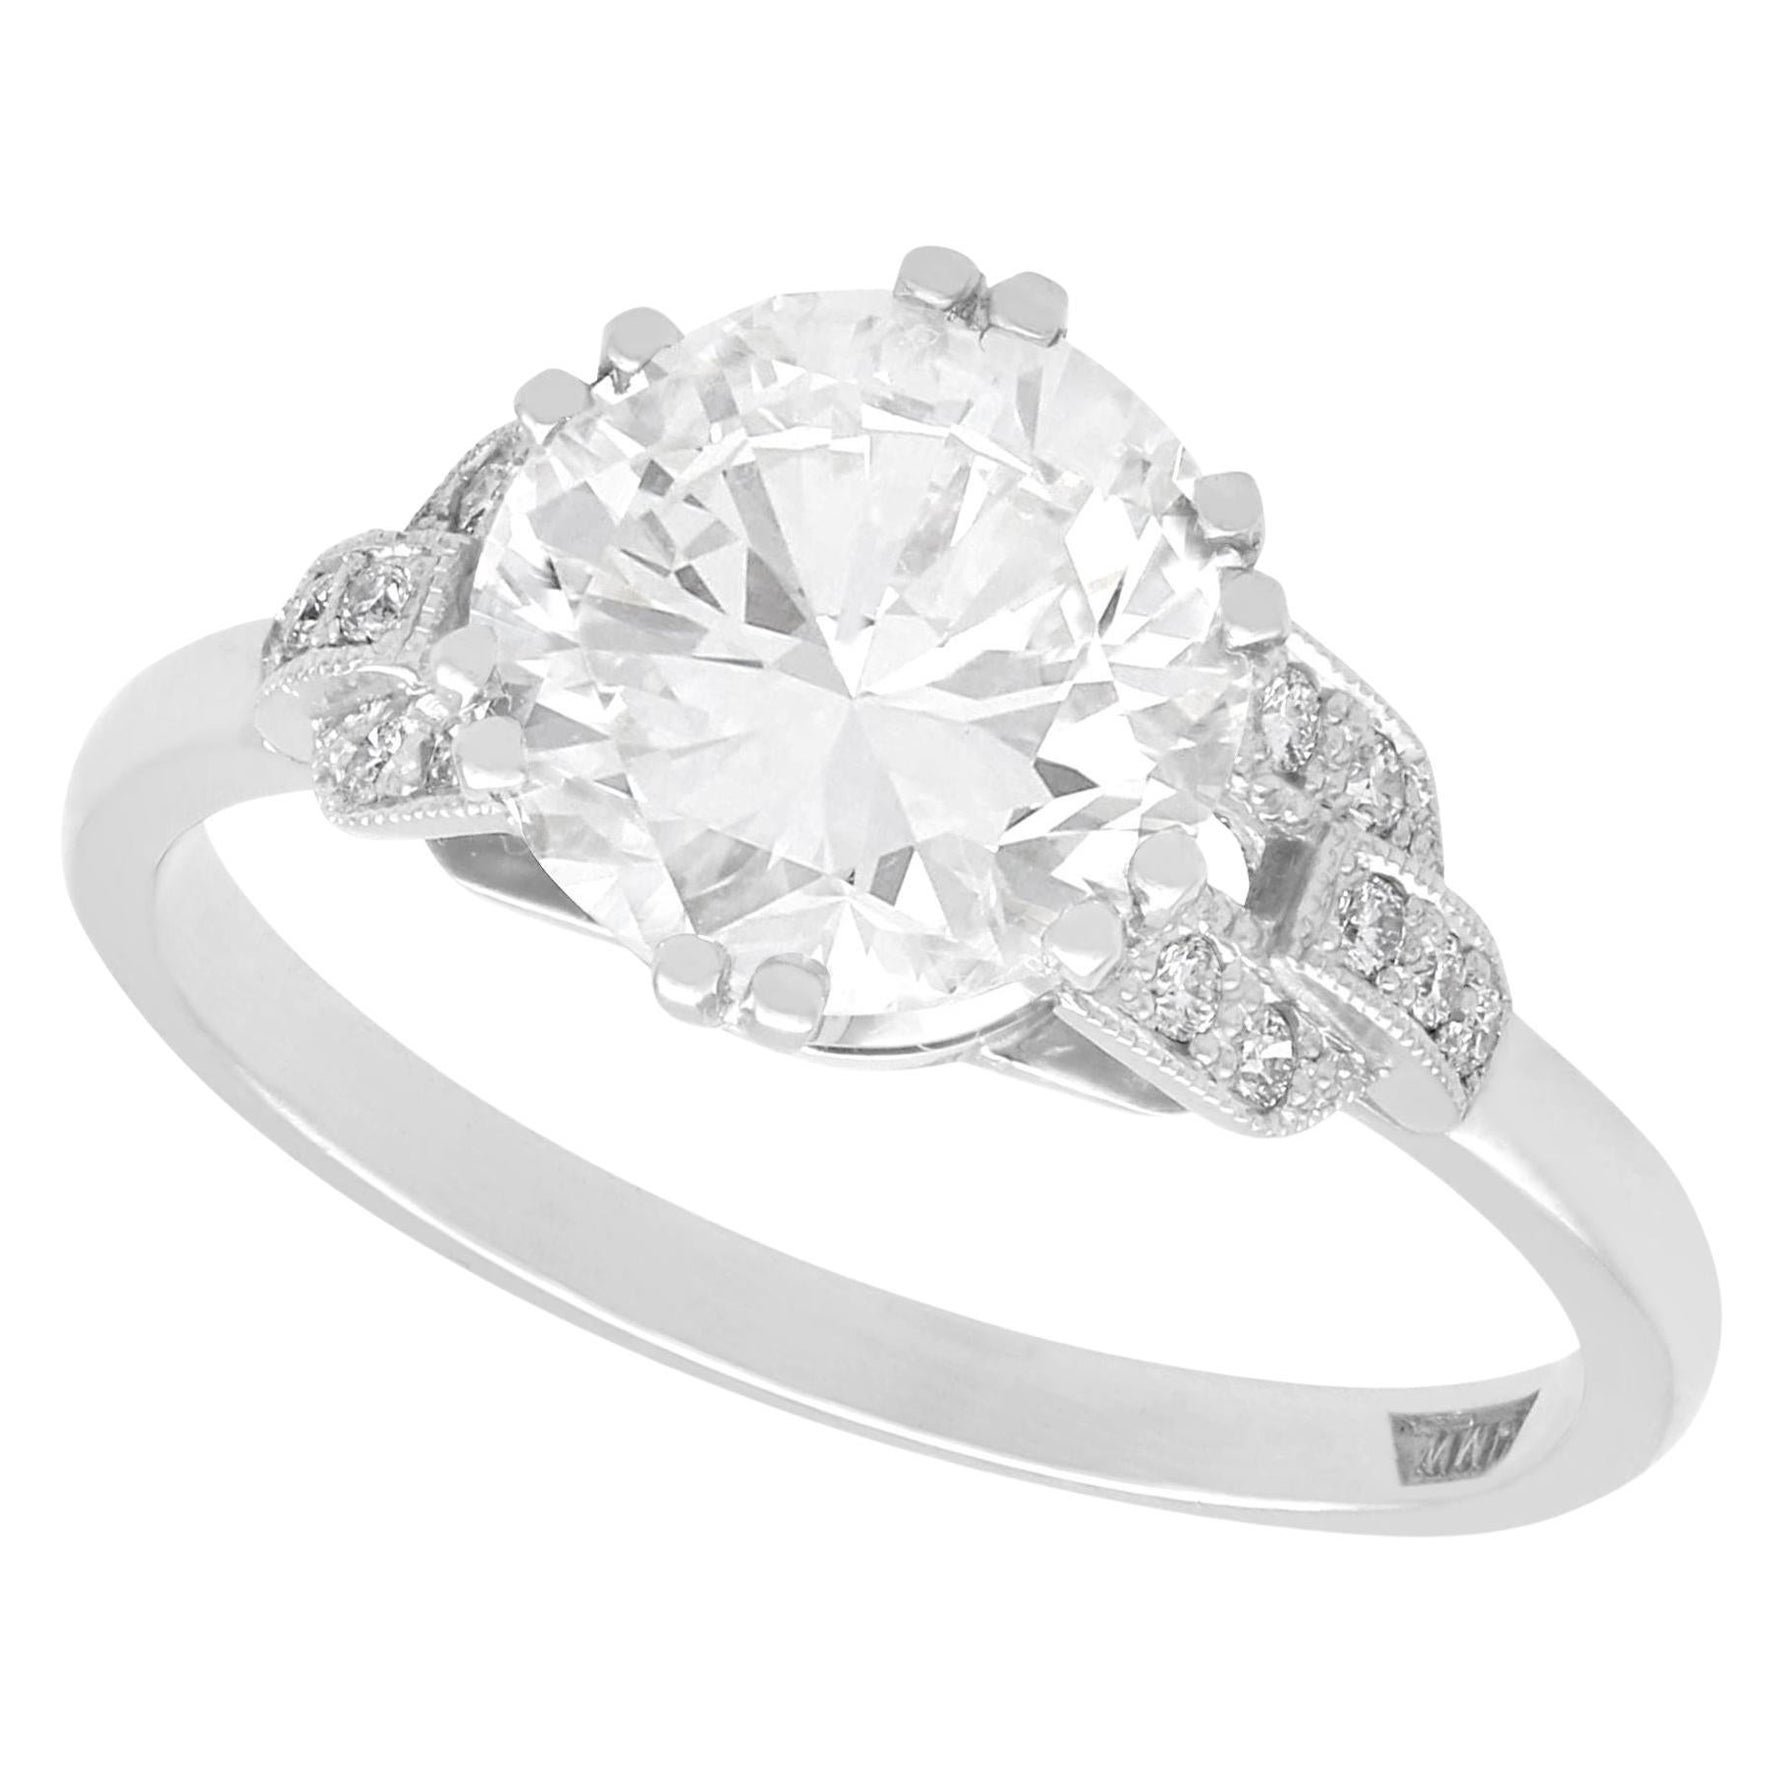 2.39 Carat Diamond and Platinum Solitaire Engagement Ring